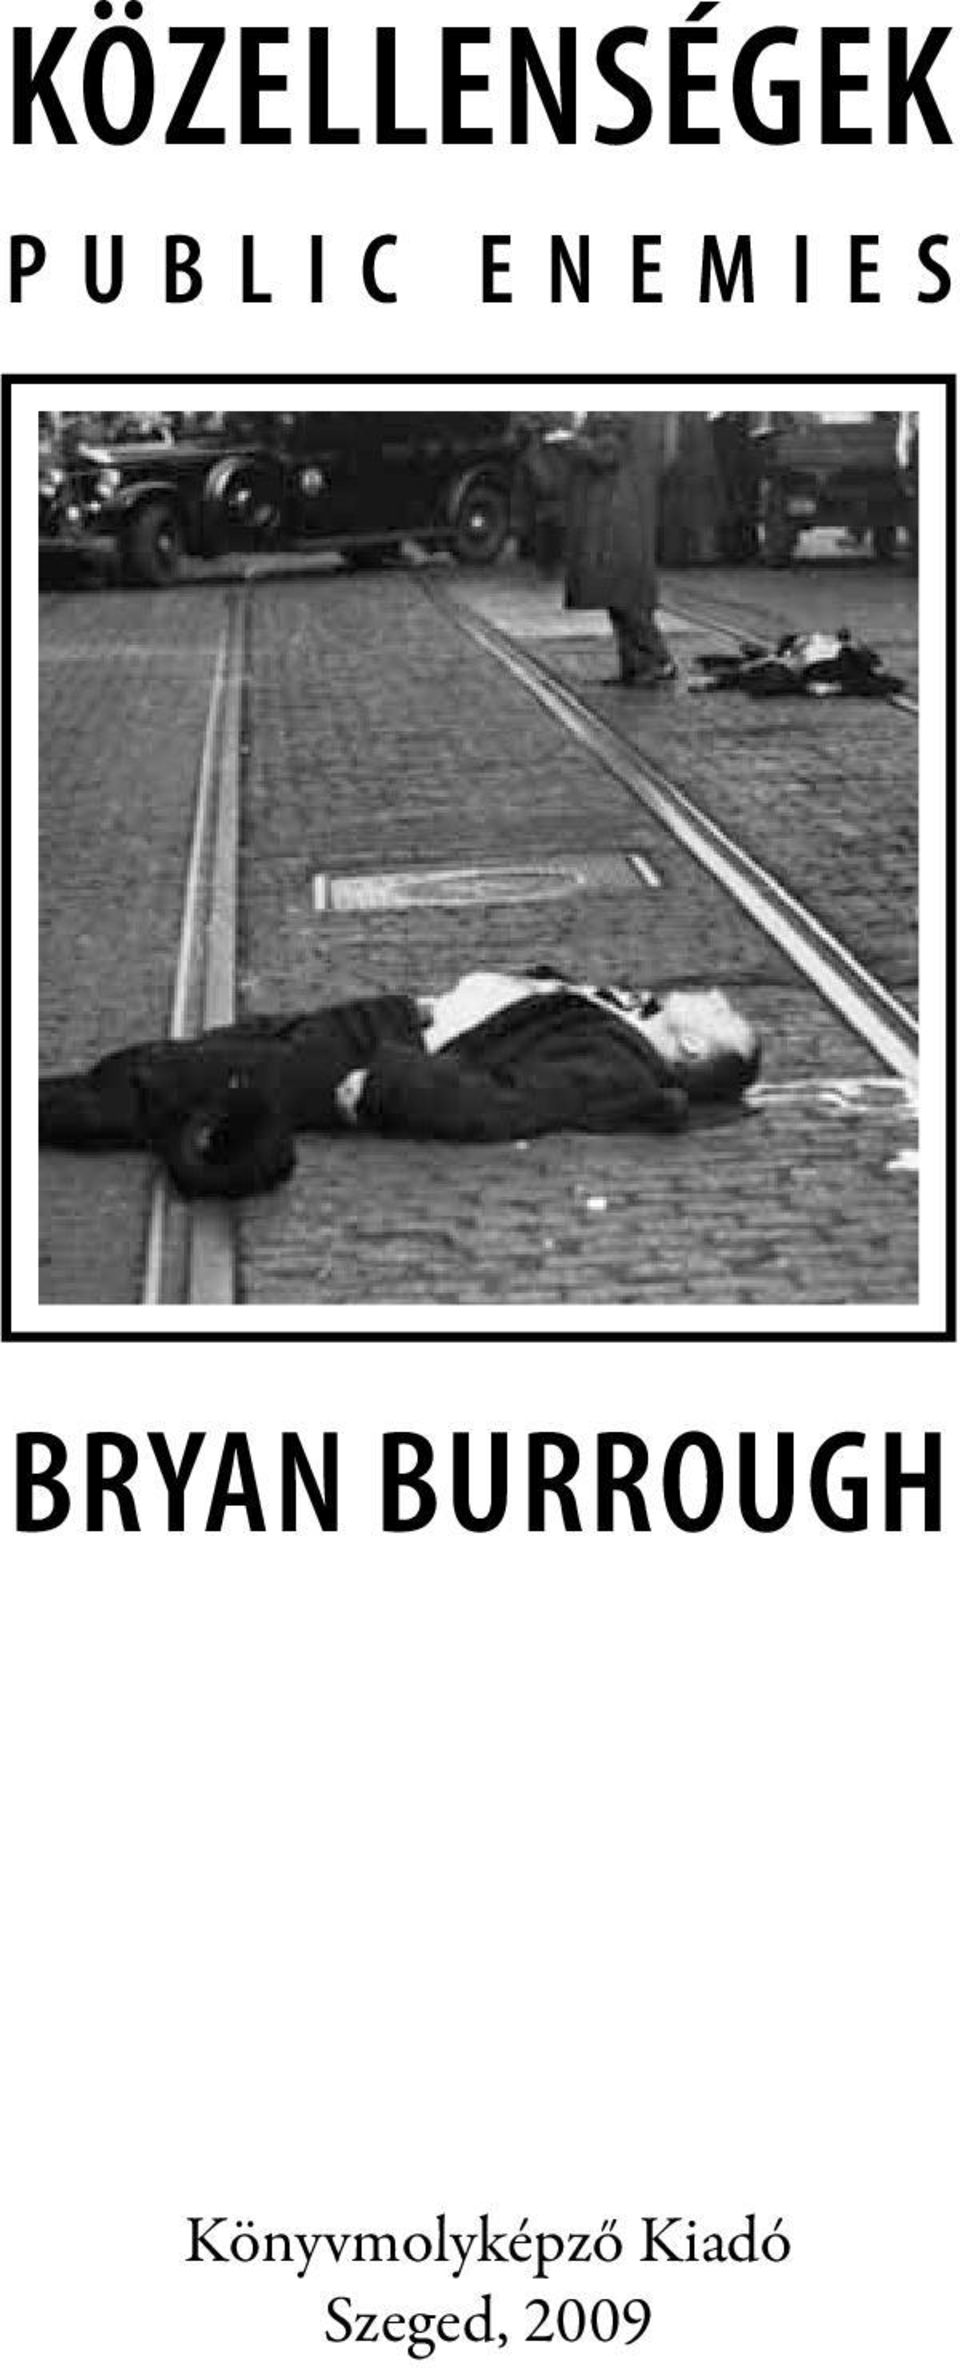 BRYAN BURROUGH